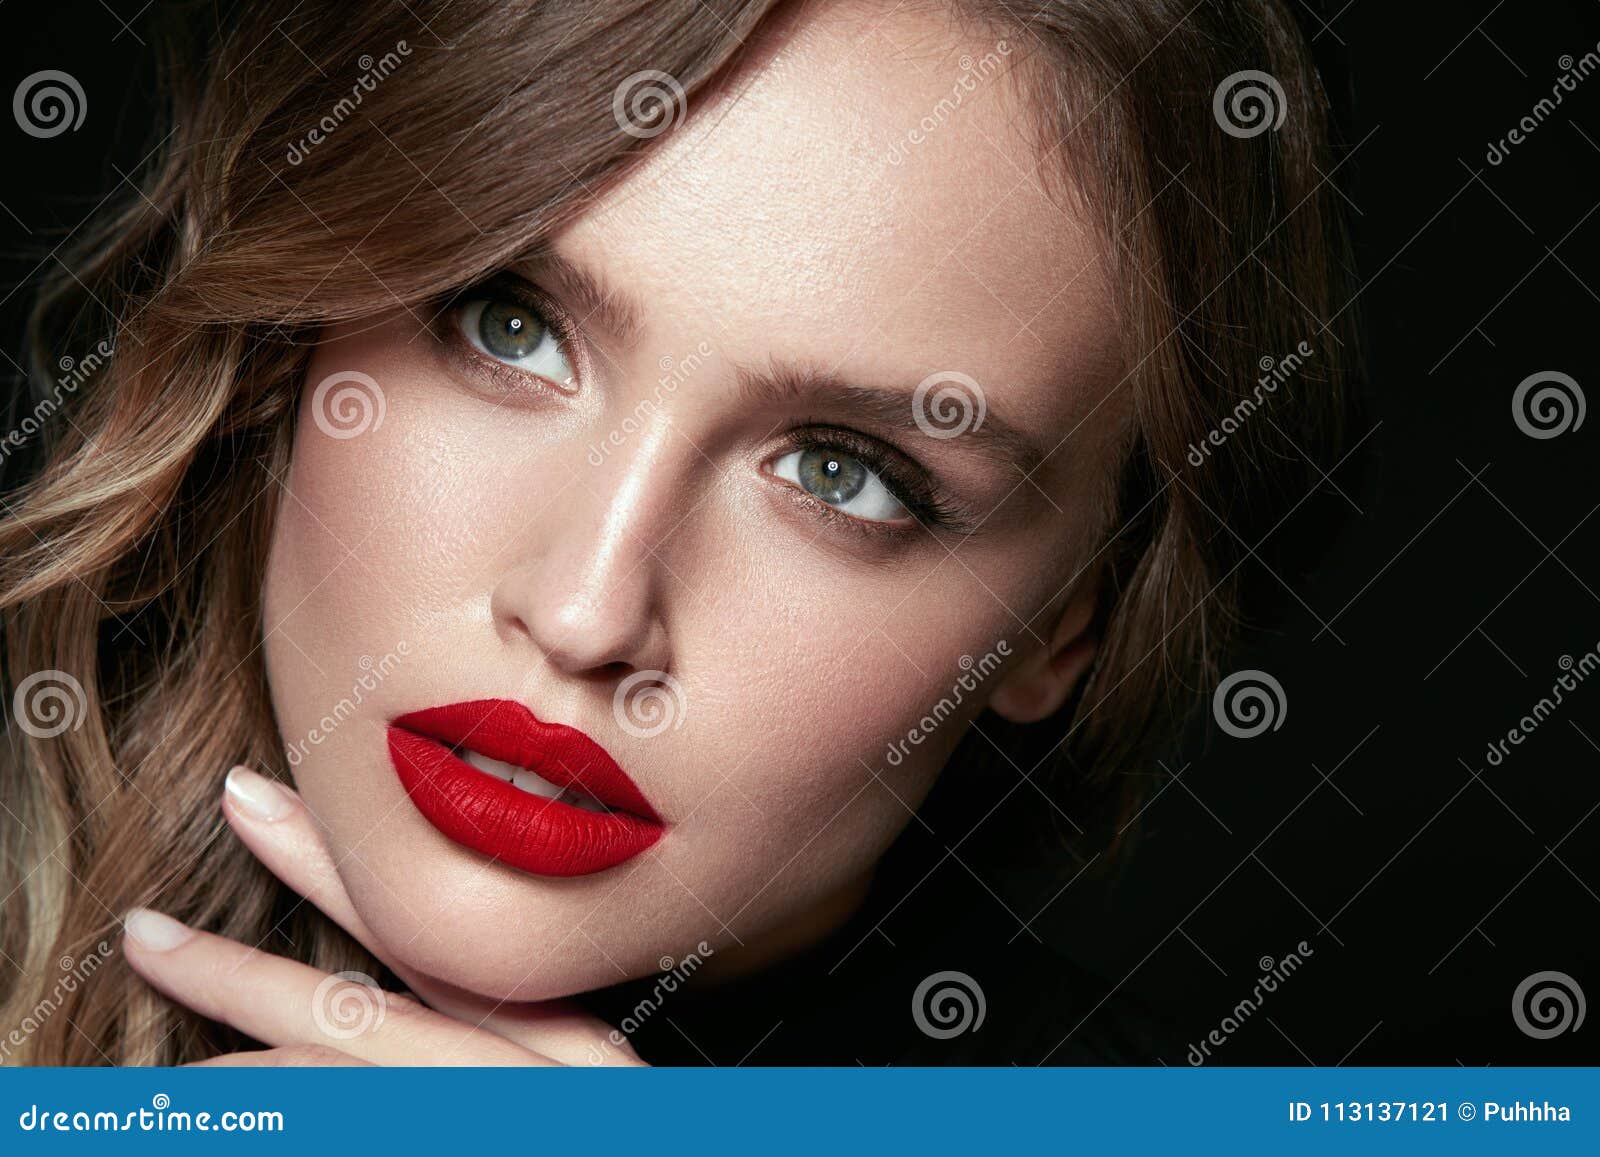 Cara Hermosa De La Mujer Con Maquillaje Y Labios Rojos Imagen De Archivo Imagen De Completo